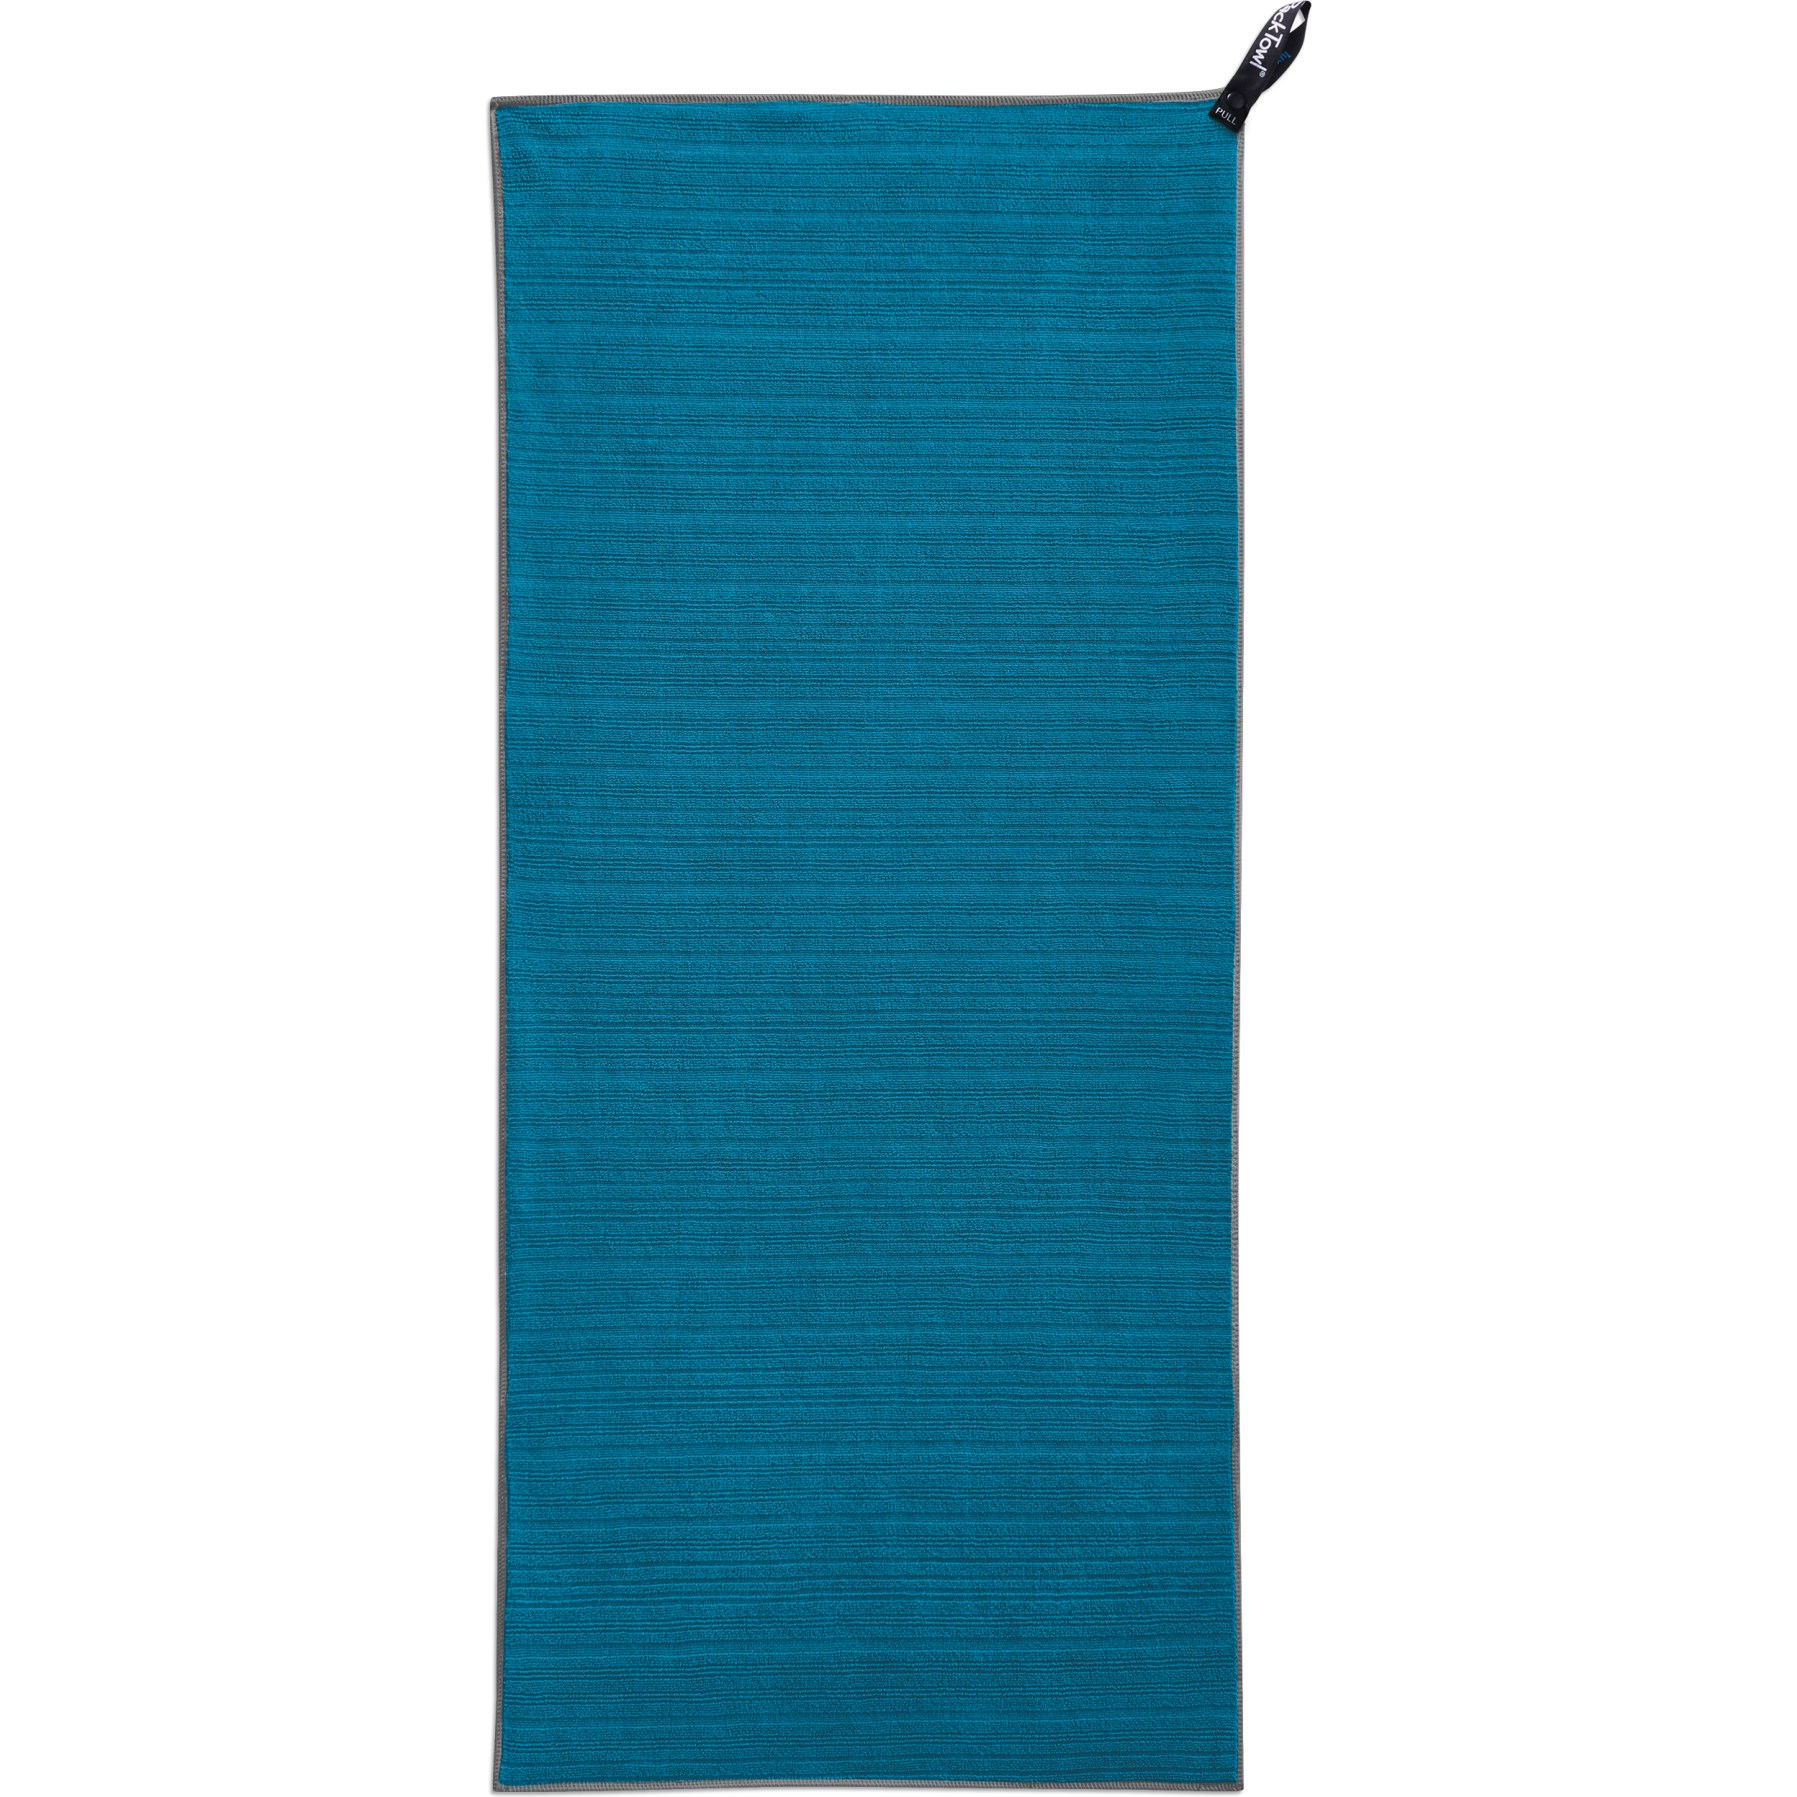 Productfoto van PackTowl Luxe Face Handdoek - lake blue